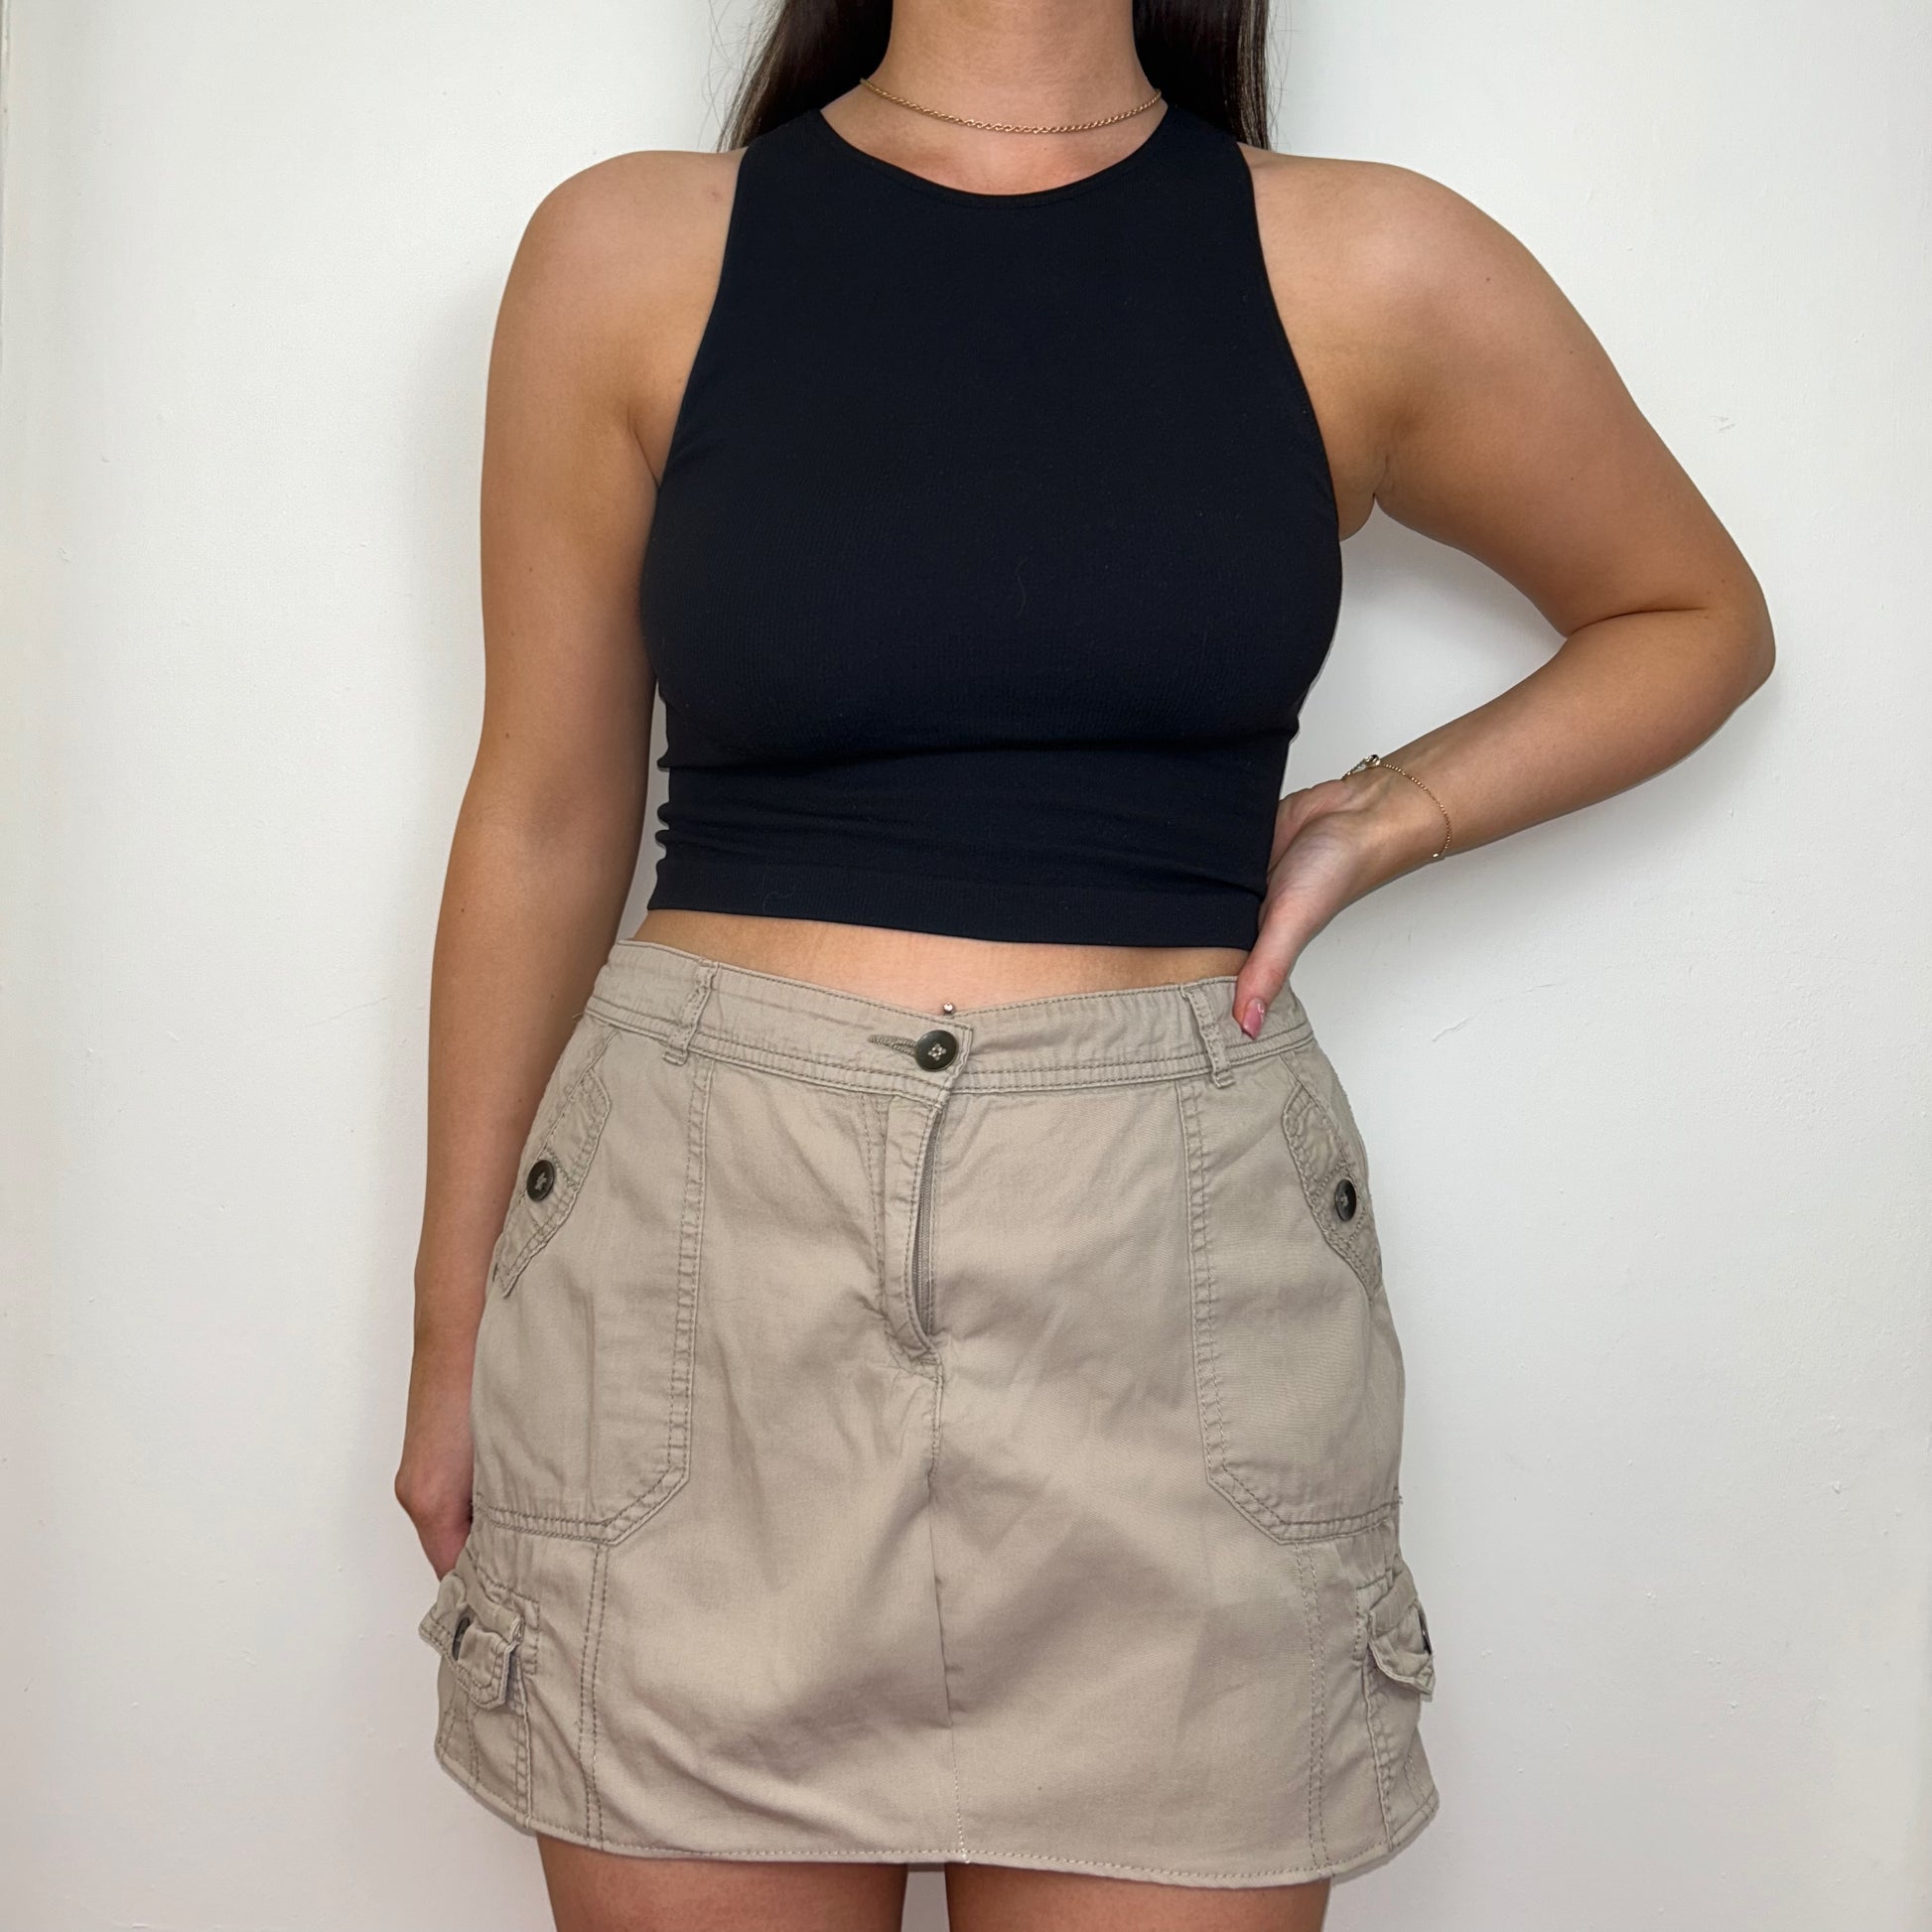 beige cargo mini skirt shown on a model wearing a black crop top